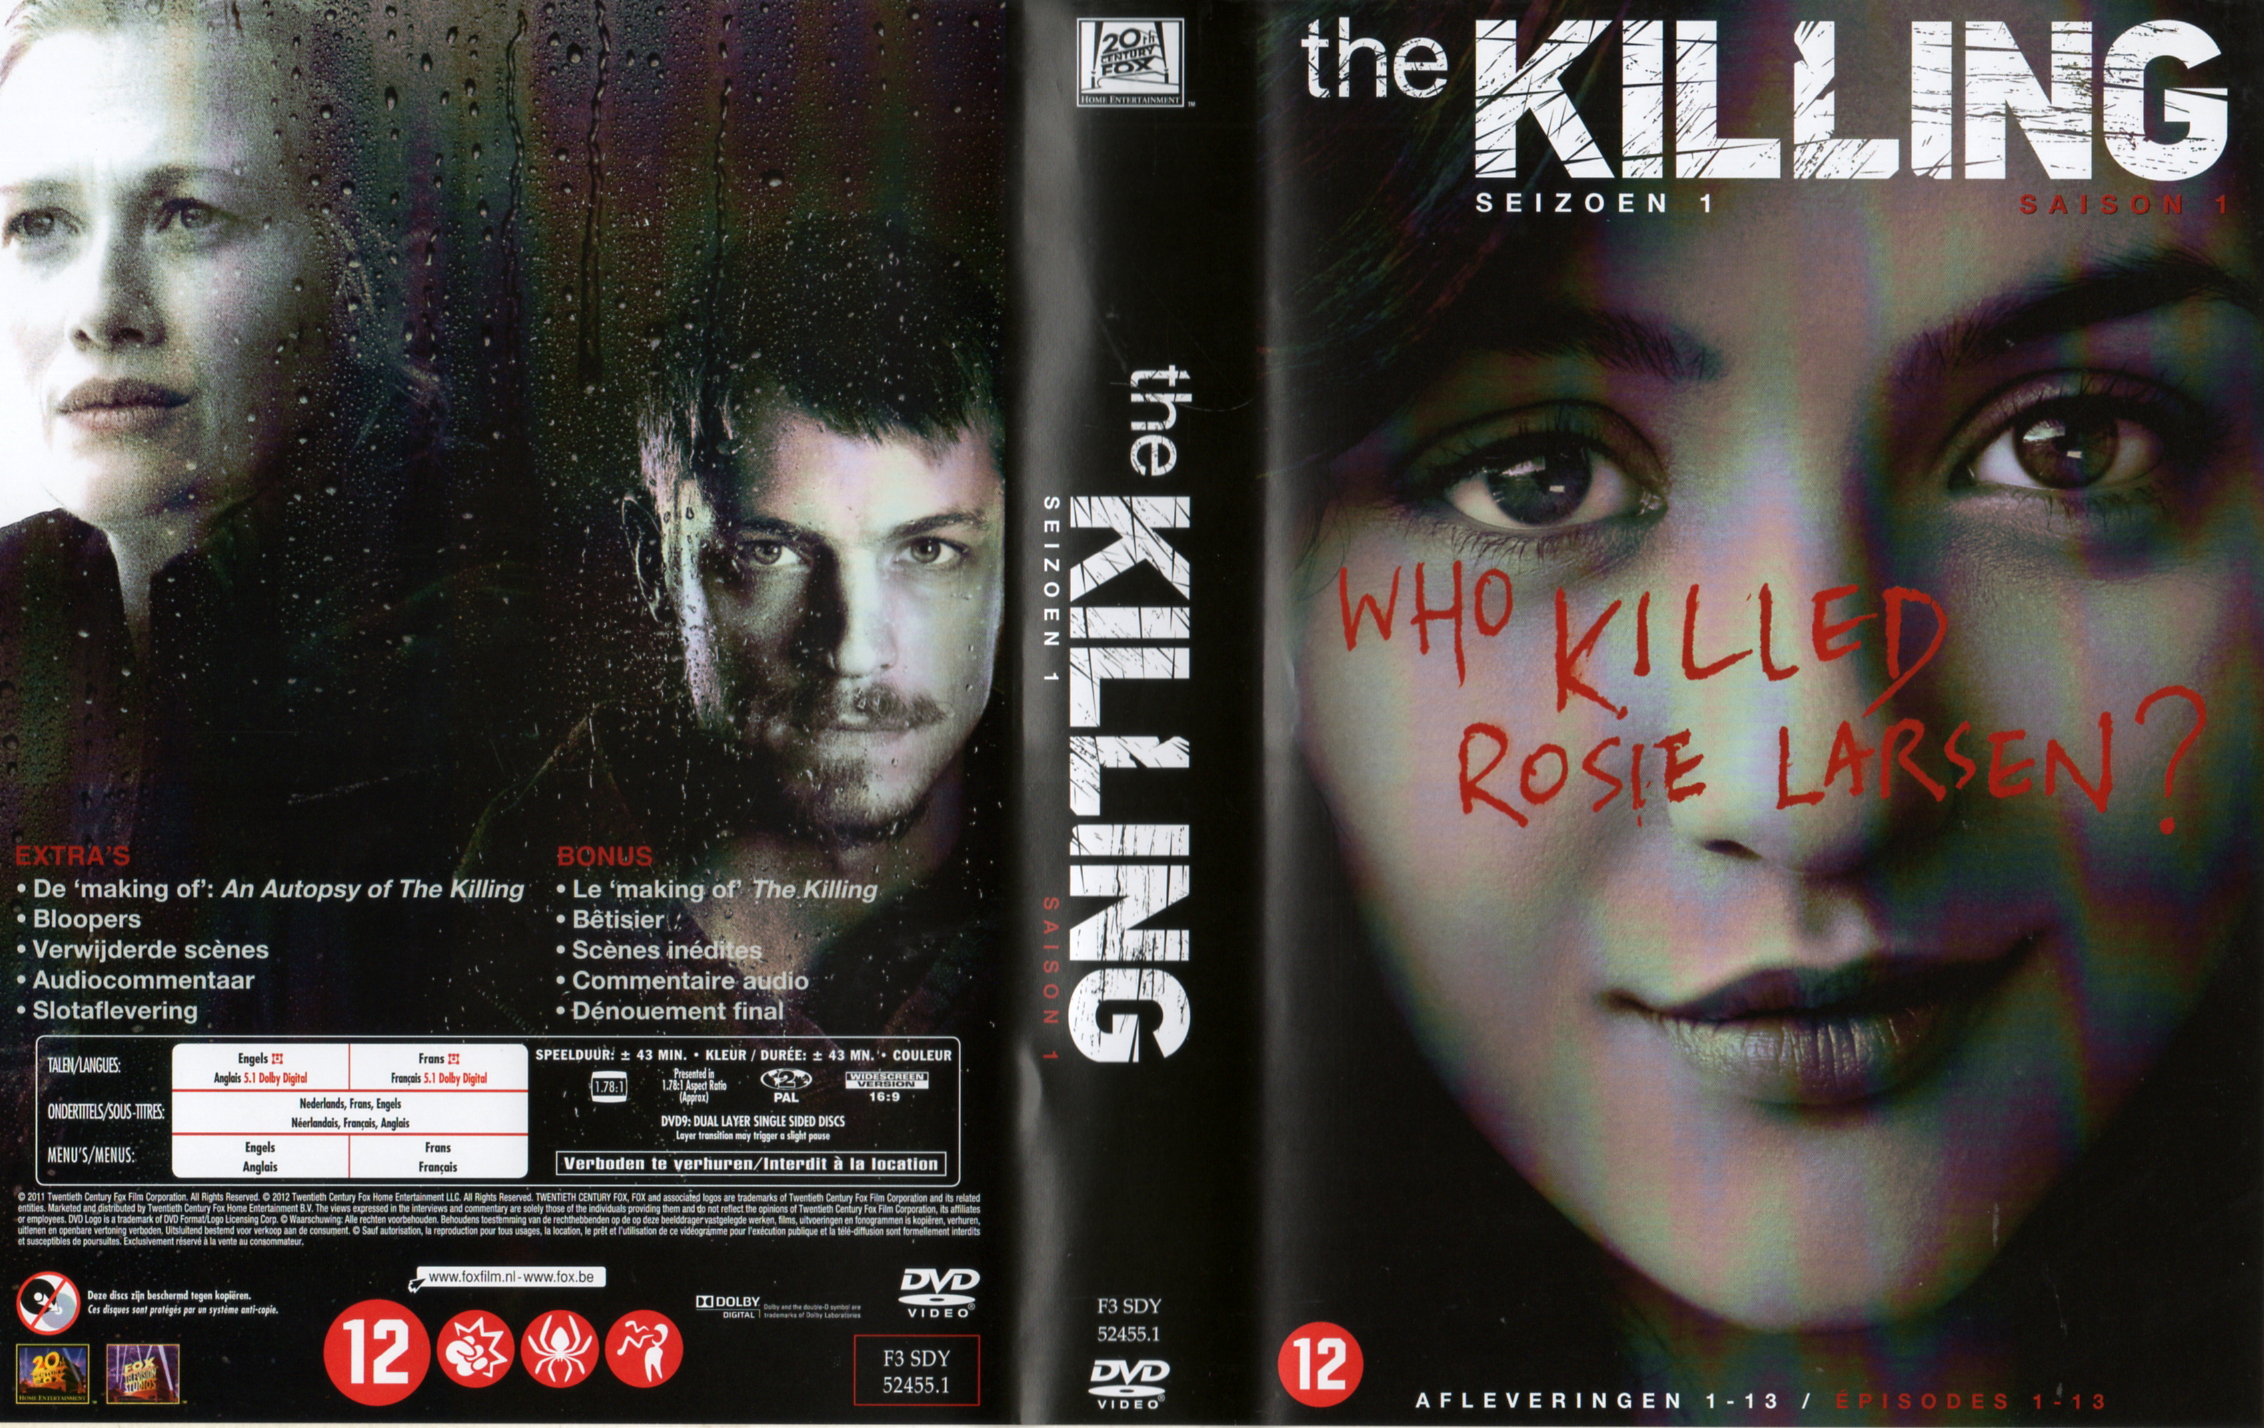 Jaquette DVD The Killing (US) Saison 1